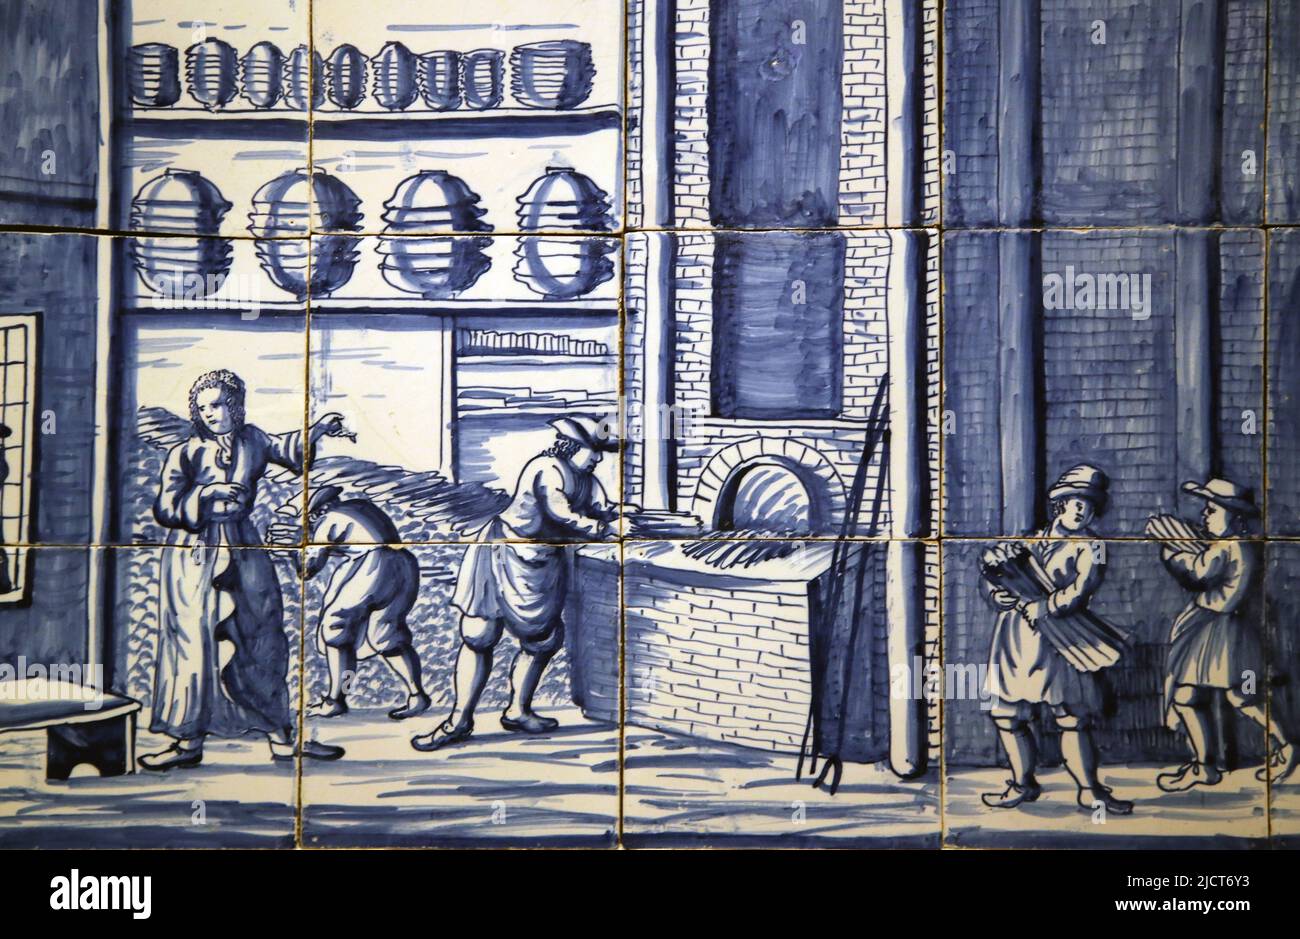 Delftware (glasiertes Steingut) dekoriert mit Töpferei in Bolsward. Ofen. Tributed to Dirk Danser (1698-1763). c. 1745-1765. Rijksmuseum. Ams Stockfoto